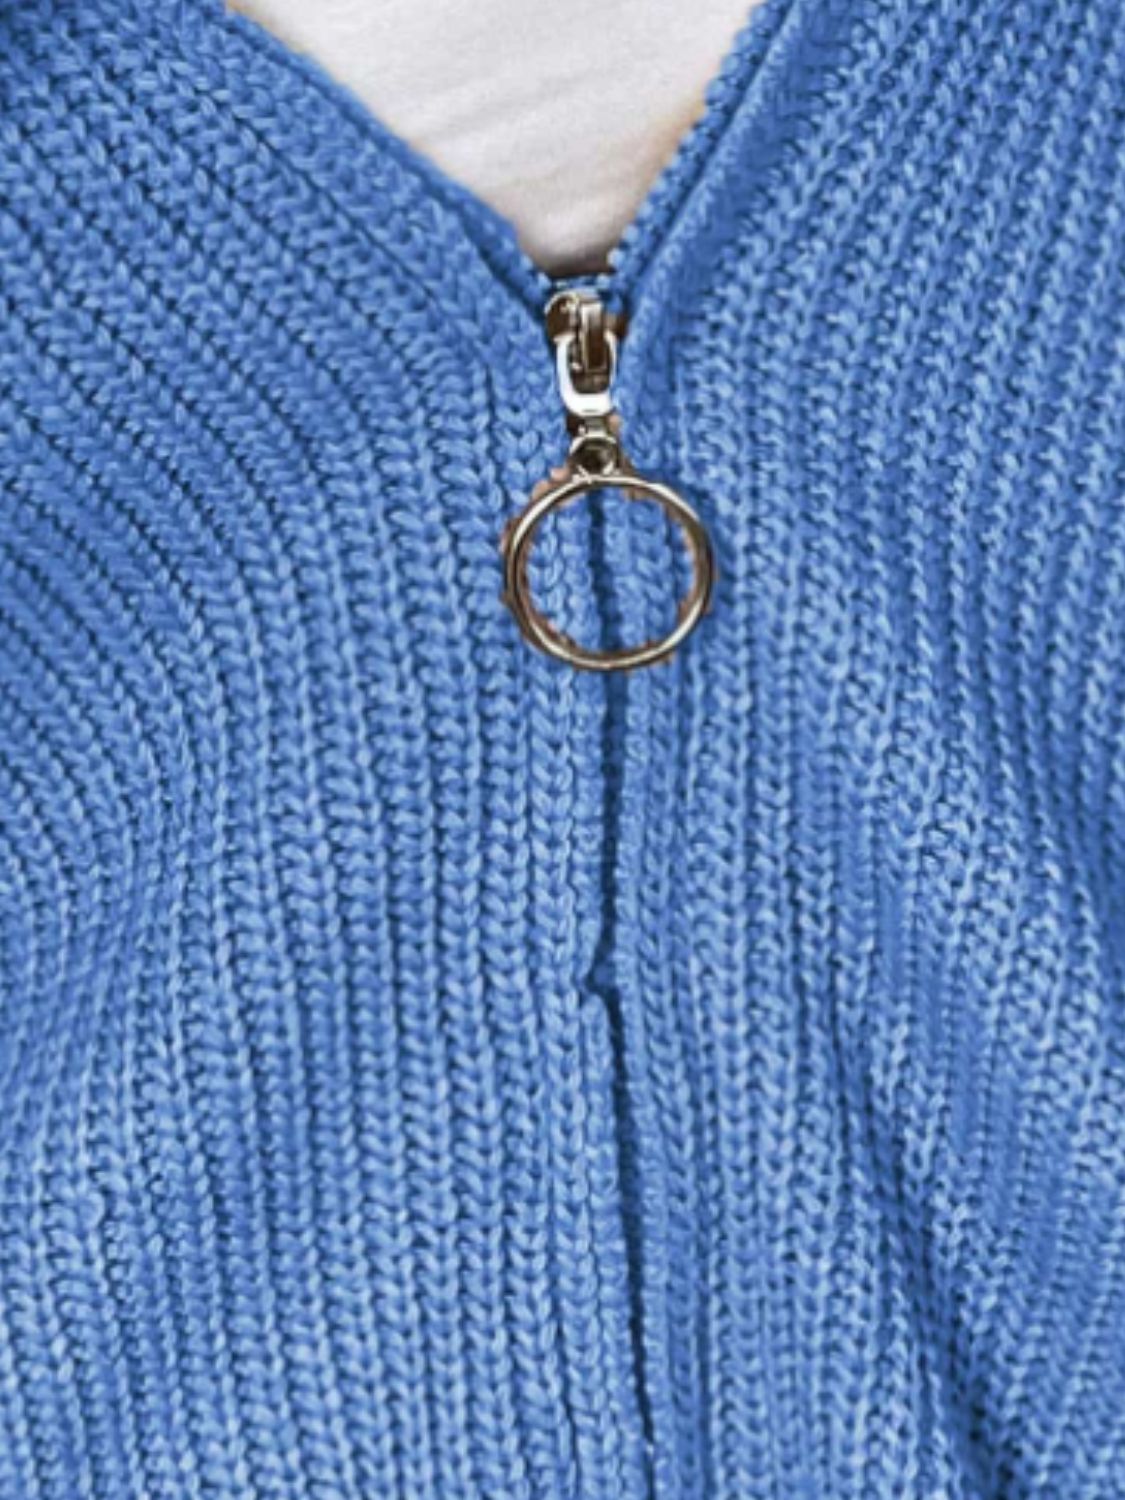 4 Zip Up Hoodie Cardigan Sweaters